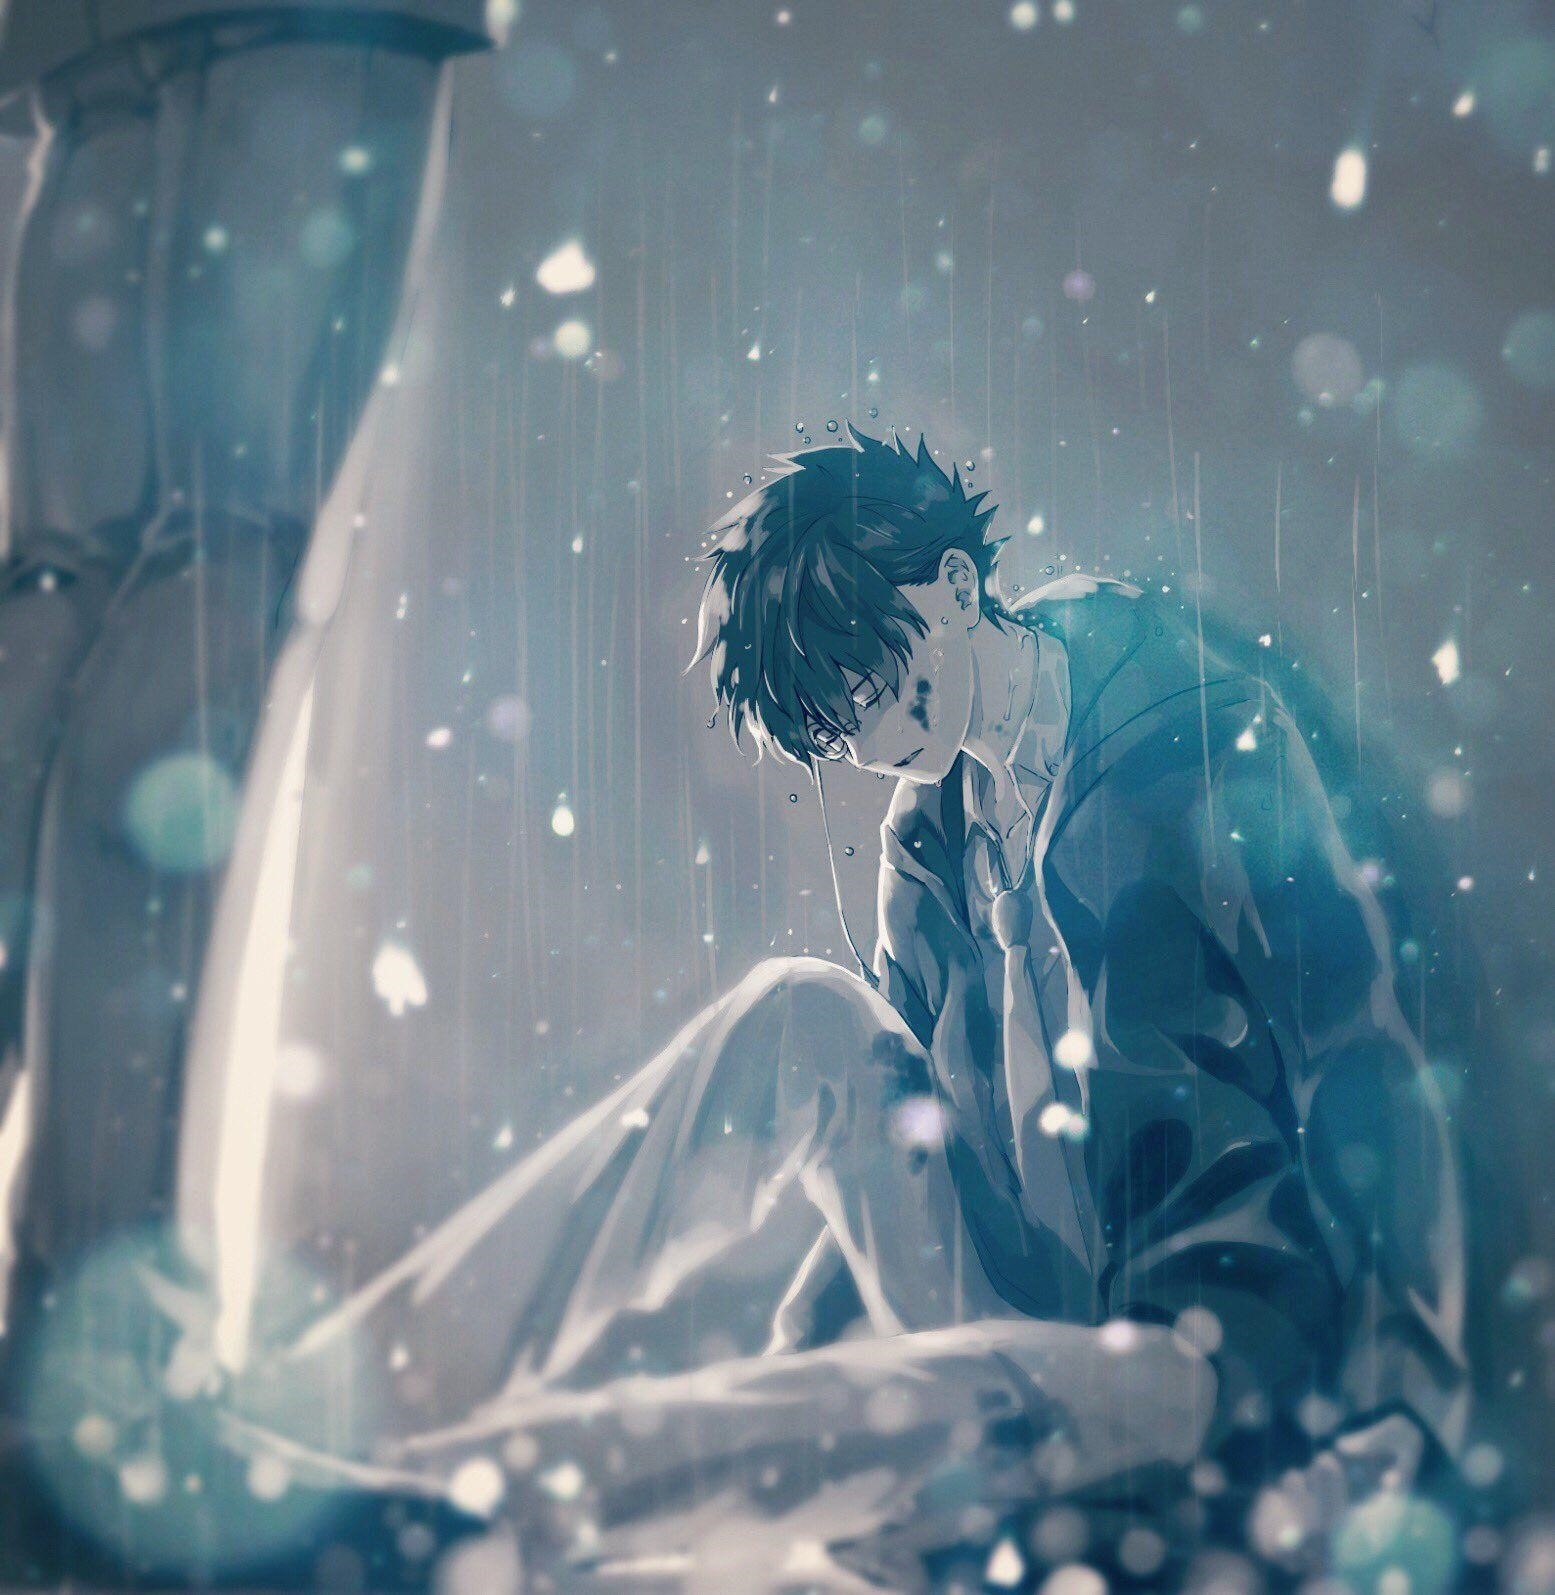 Ảnh anime khóc thường thể hiện những cảm xúc sâu sắc và đau buồn của nhân vật, tạo nên sự đồng cảm và xúc động cho người xem.